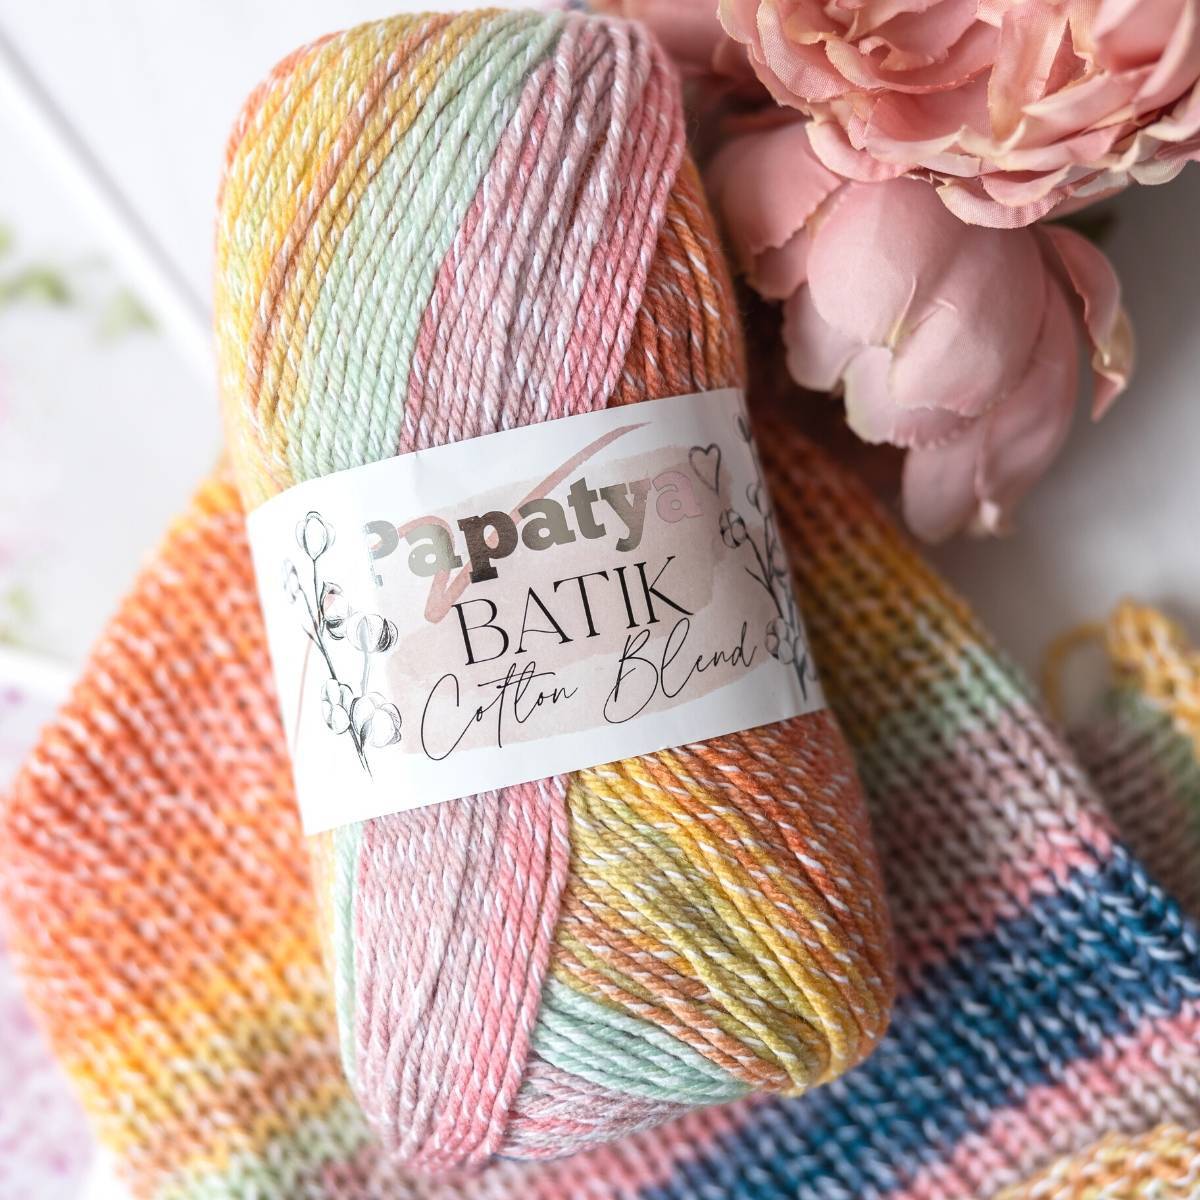 Papatya Batik Cotton Blend | The Knitting Network